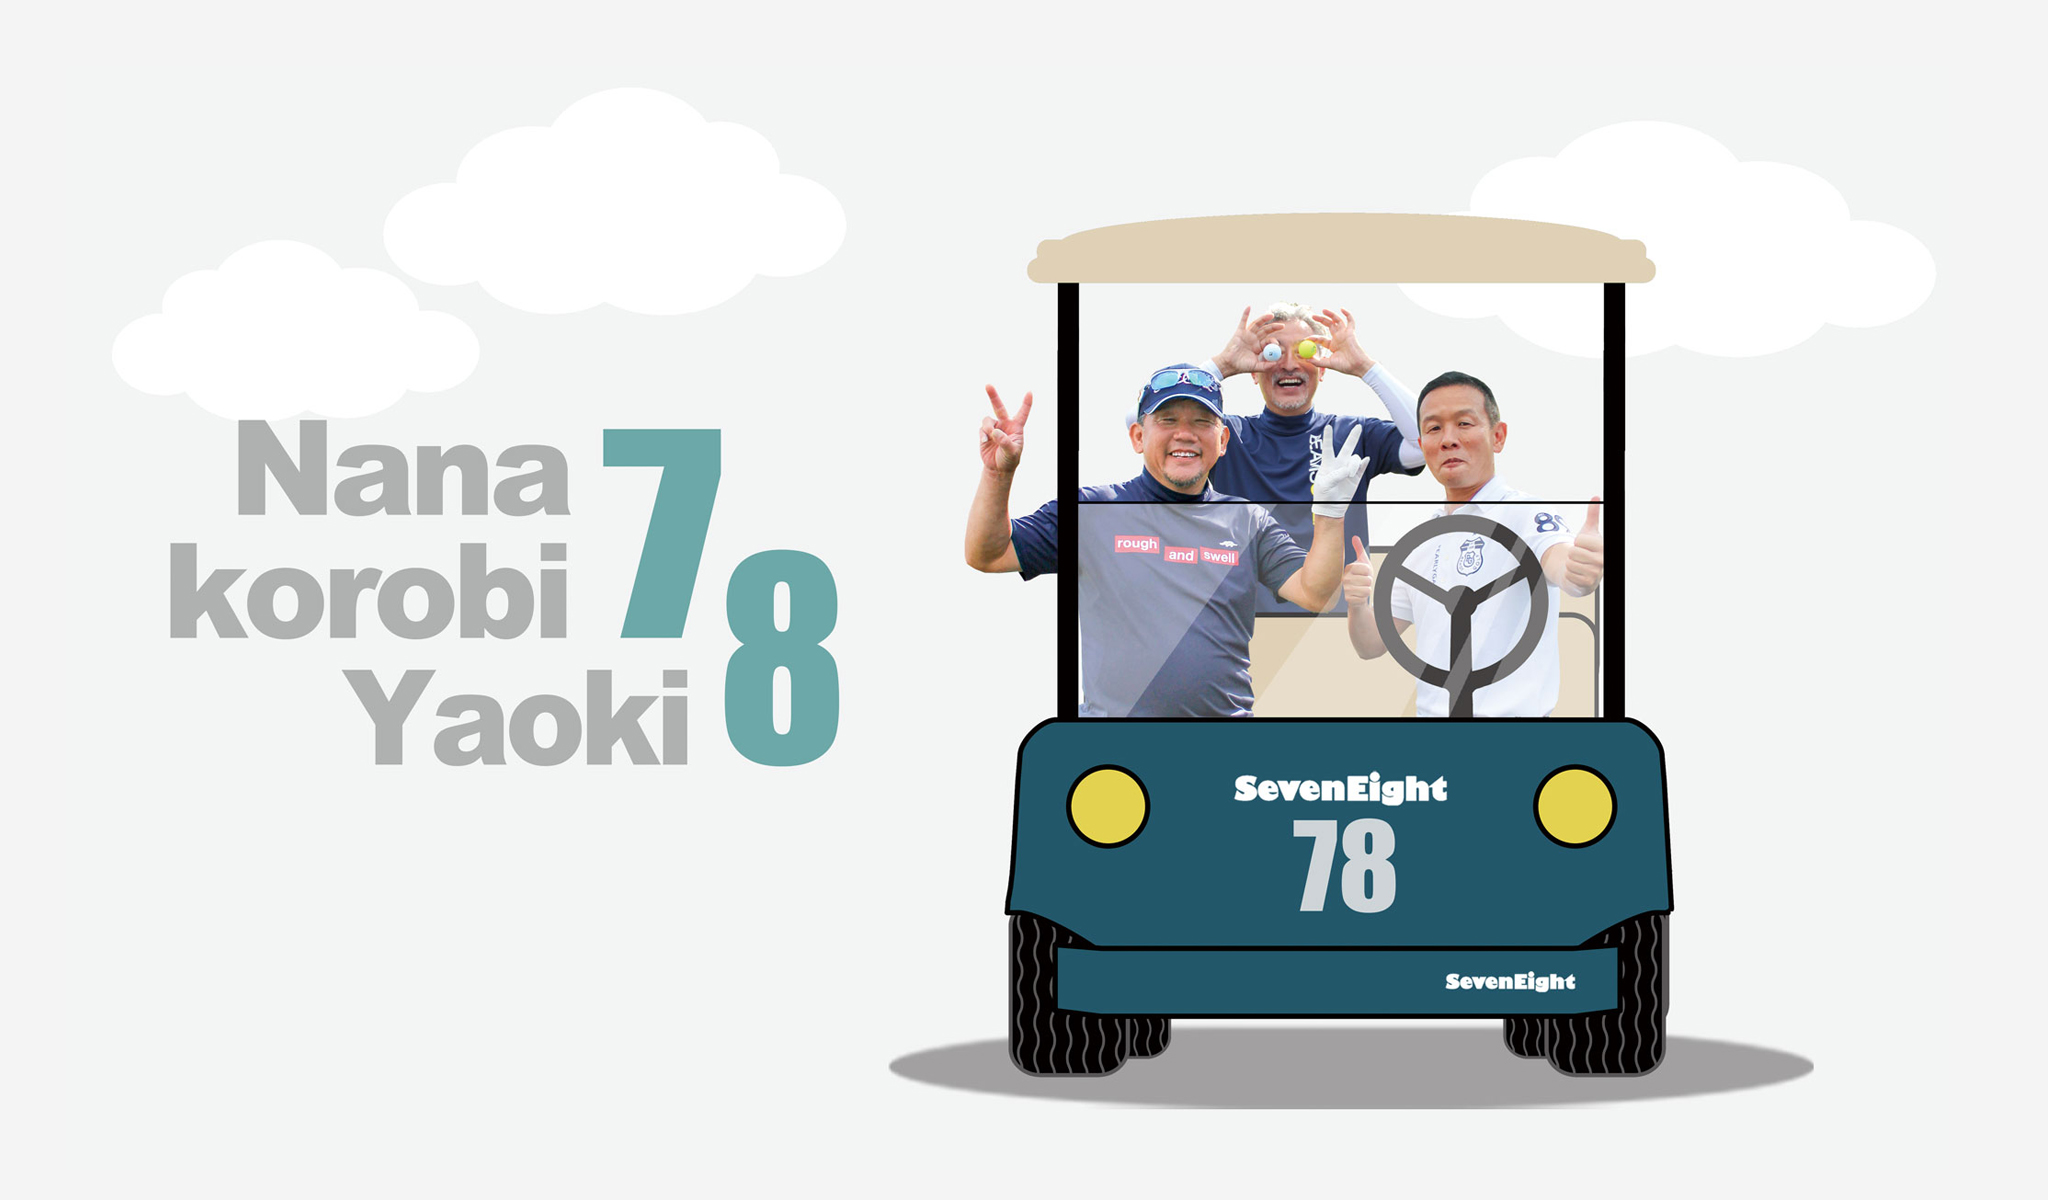 TOPページのスライダー画像3は関西ゴルフサークル セブンエイト松村さん、大橋さん、長谷川さん